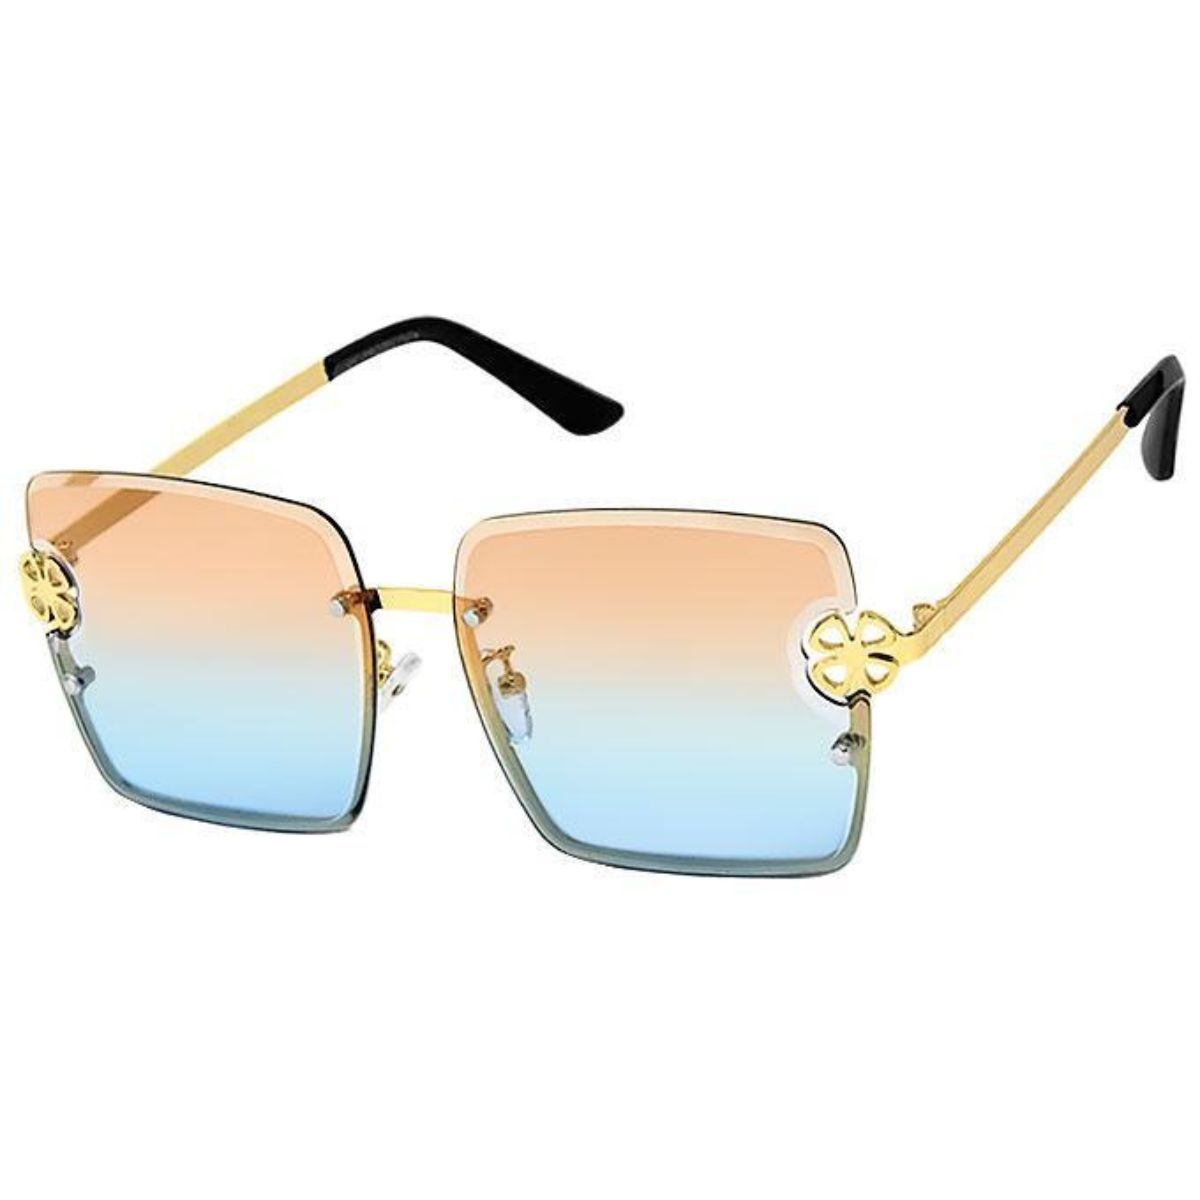 Orange Square Clover Sunglasses